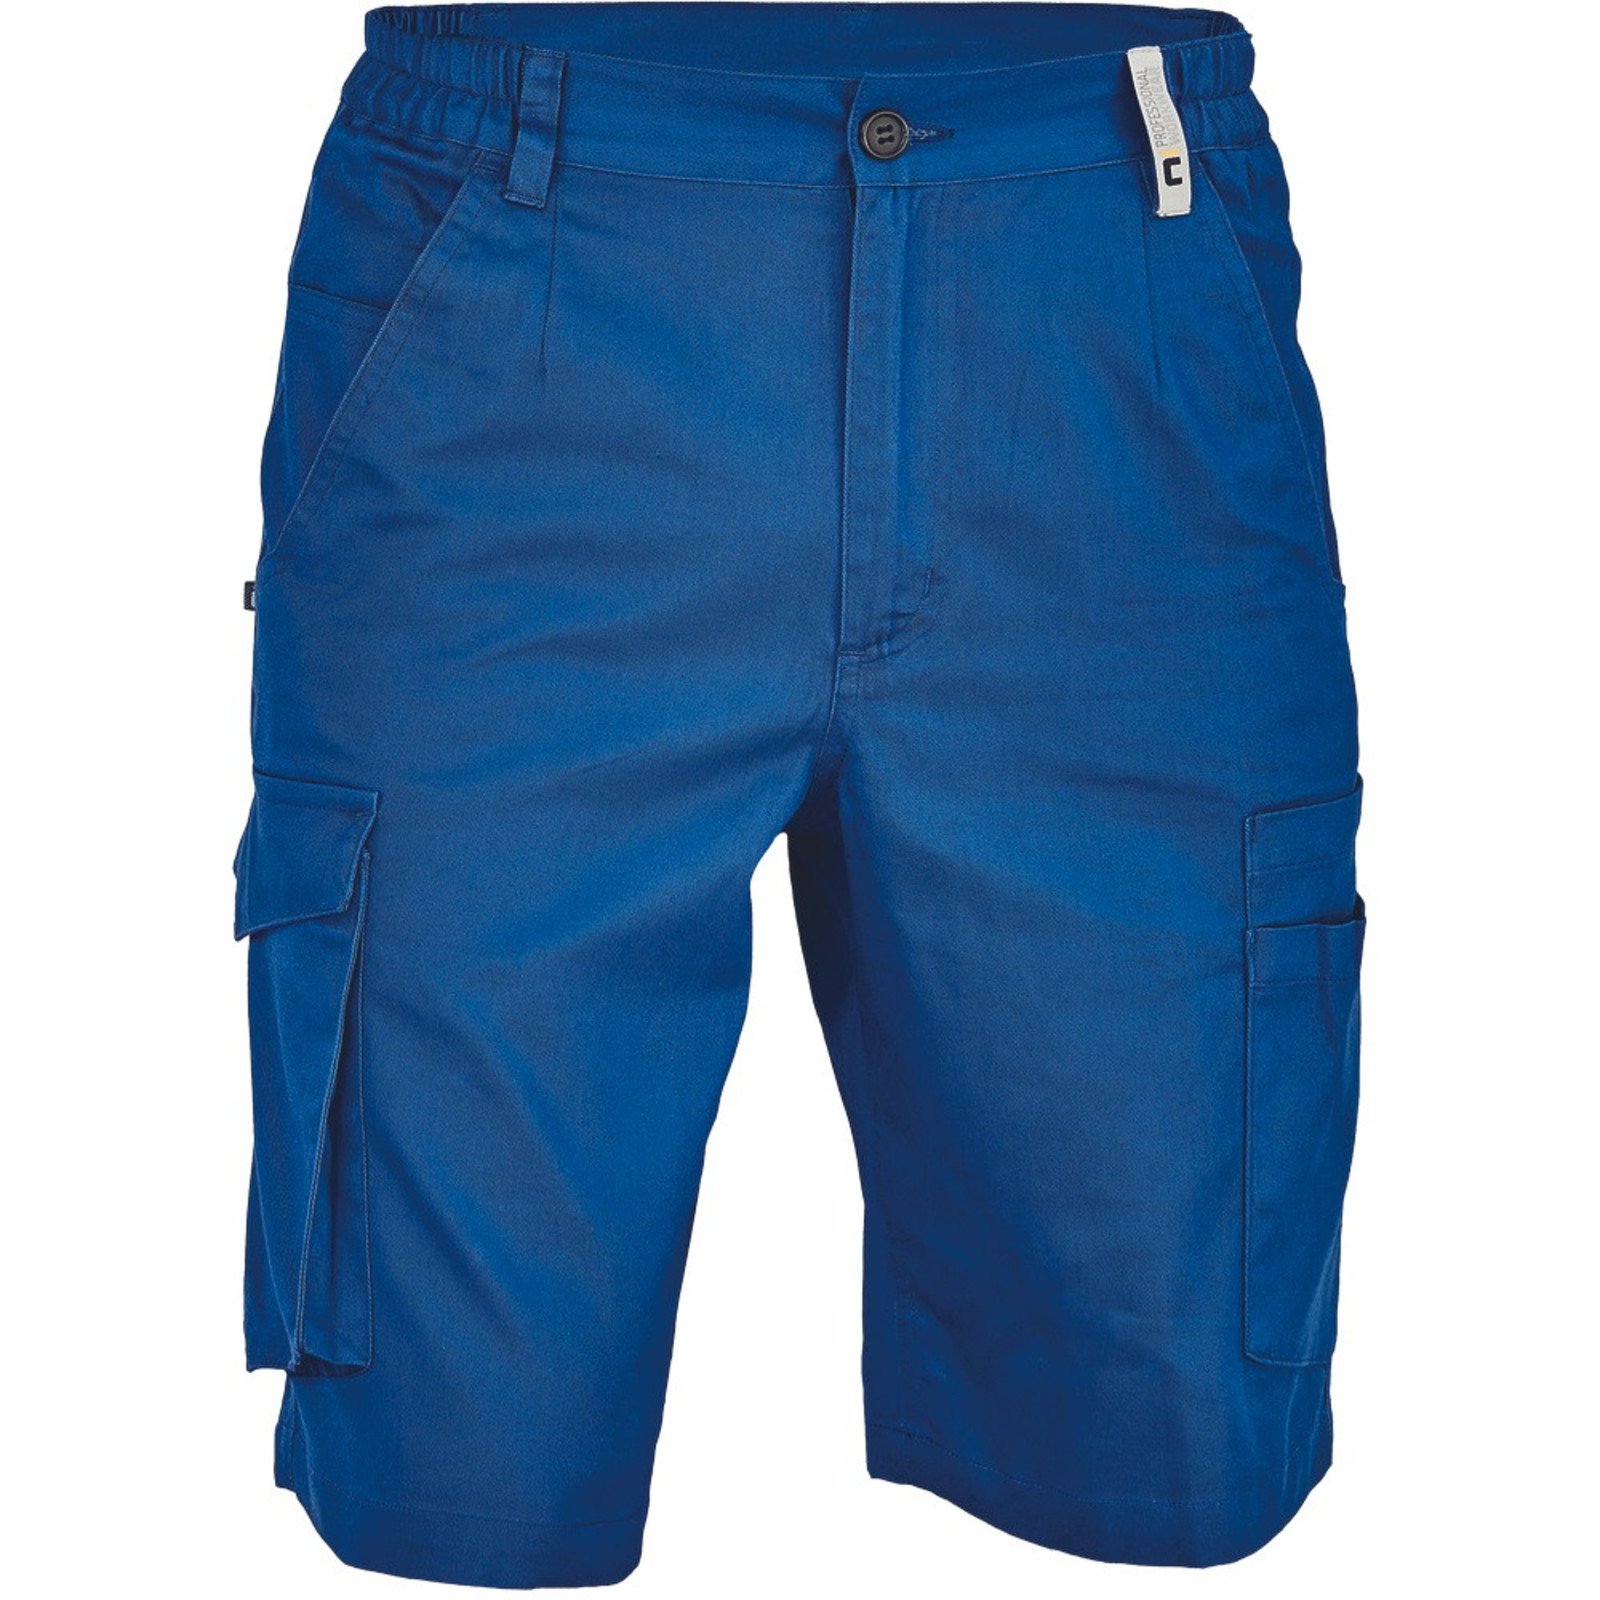 Pánske pracovné šortky Cerva Ciudades Basic Gijon - veľkosť: 54, farba: royal blue